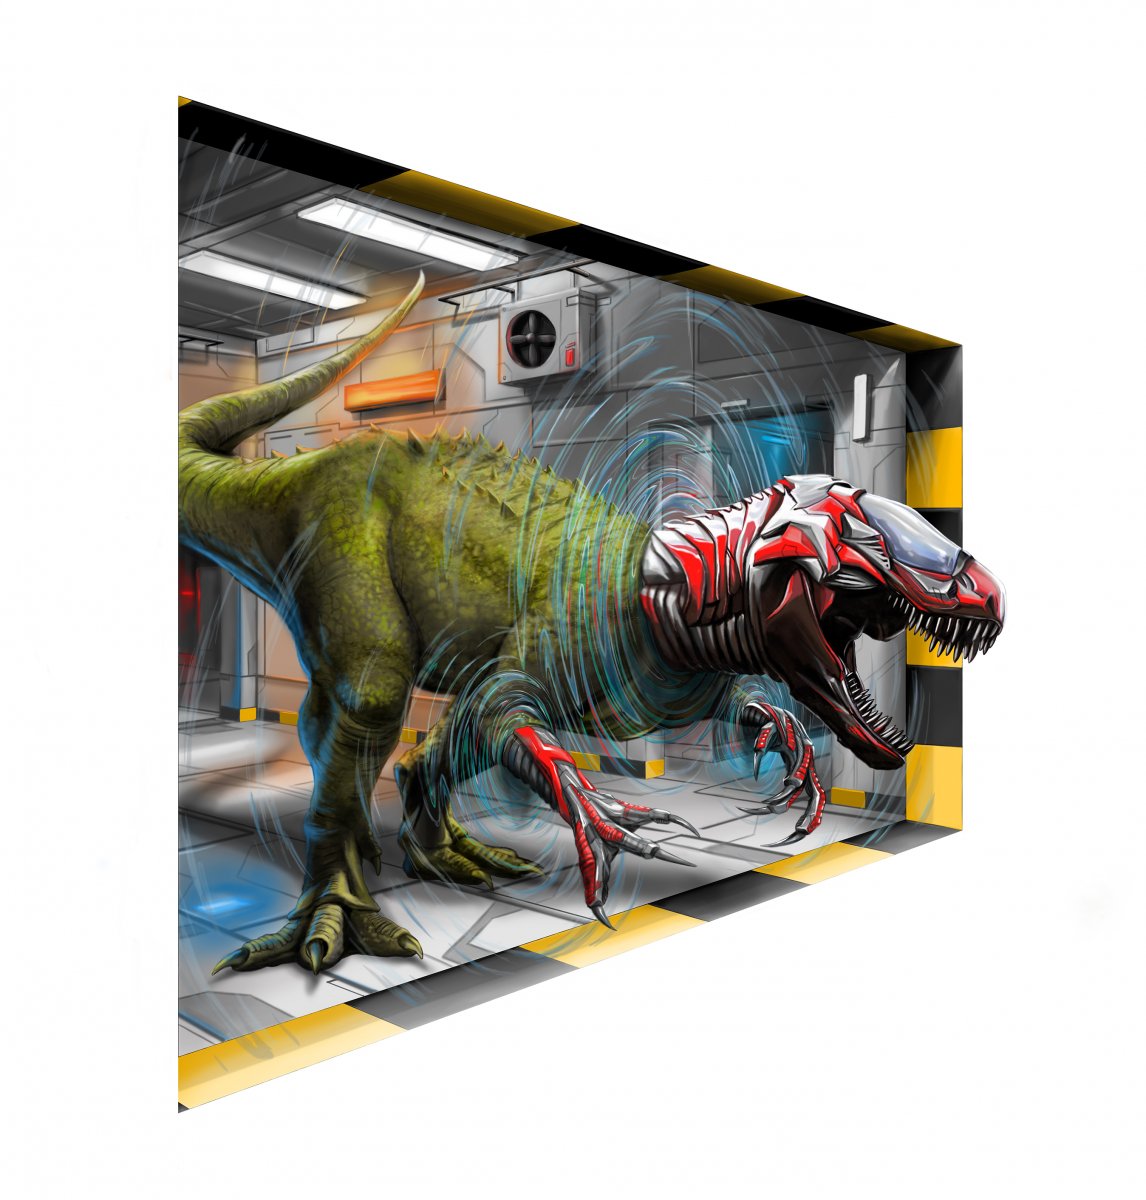 Bogotá abre las puertas exposición 3D de animales Desde esta semana y hasta el próximo 5 de abril estará abierto el Museo de Ilusiones 3D en Bogotá, con obras inéditas de artistas checos. Con acceso gratuito, es la oportunidad para encontrarse con dinosaurios prehistóricos que devoran, dragones ancestrales, tiburones aterradores o grandes rascacielos.